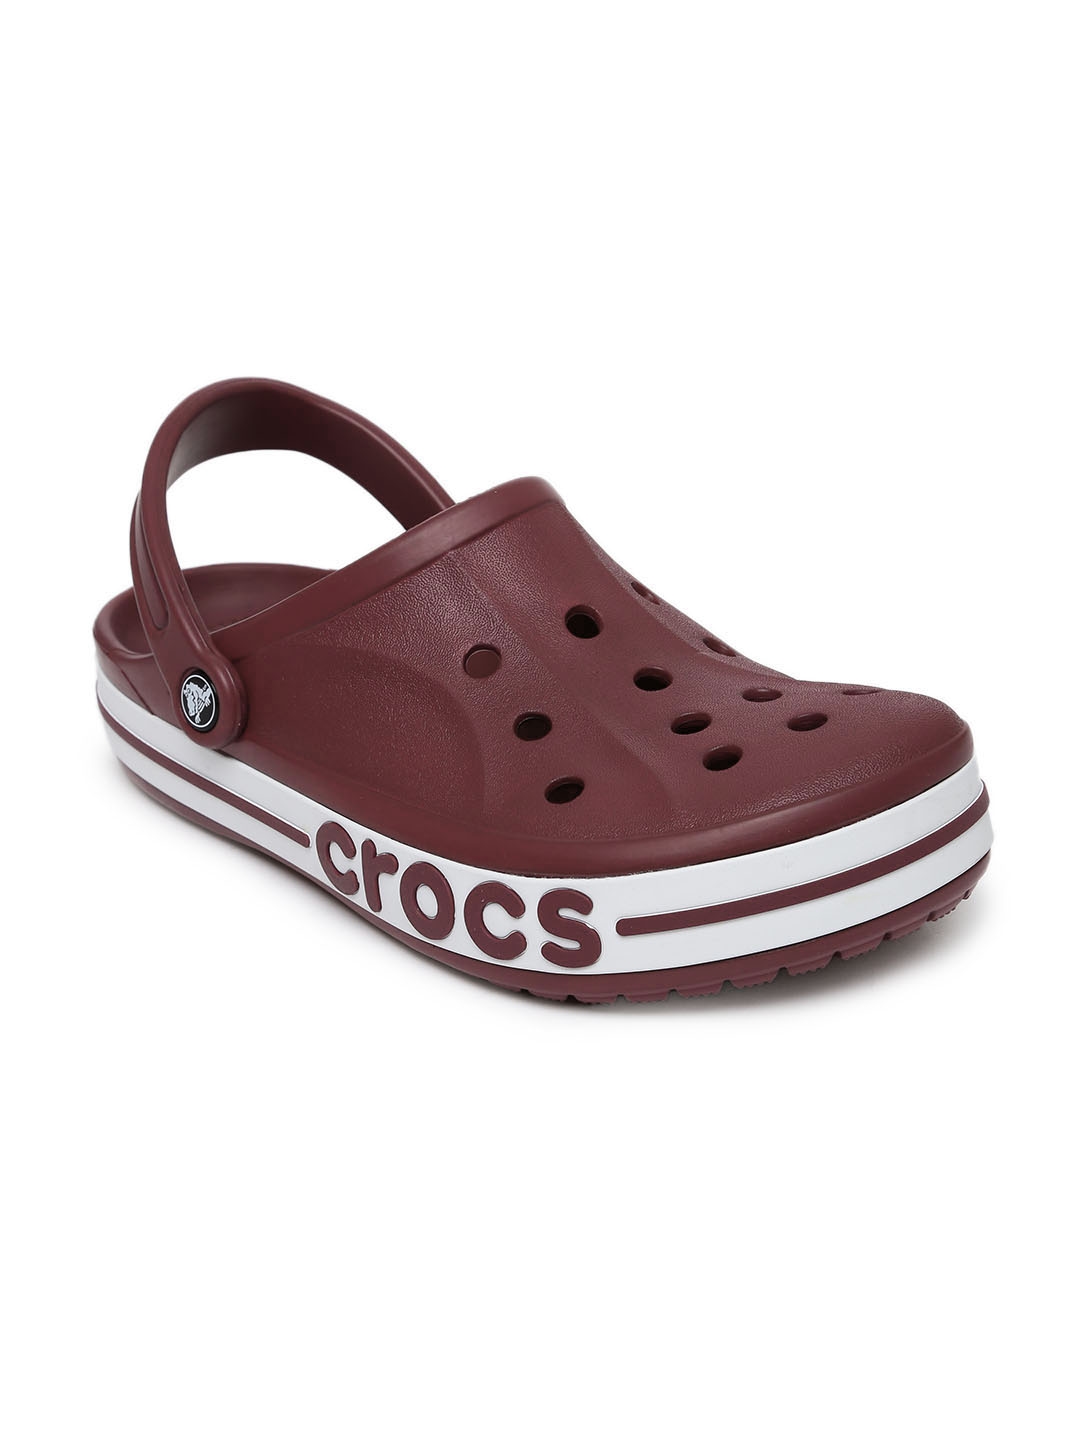 crocs maroon